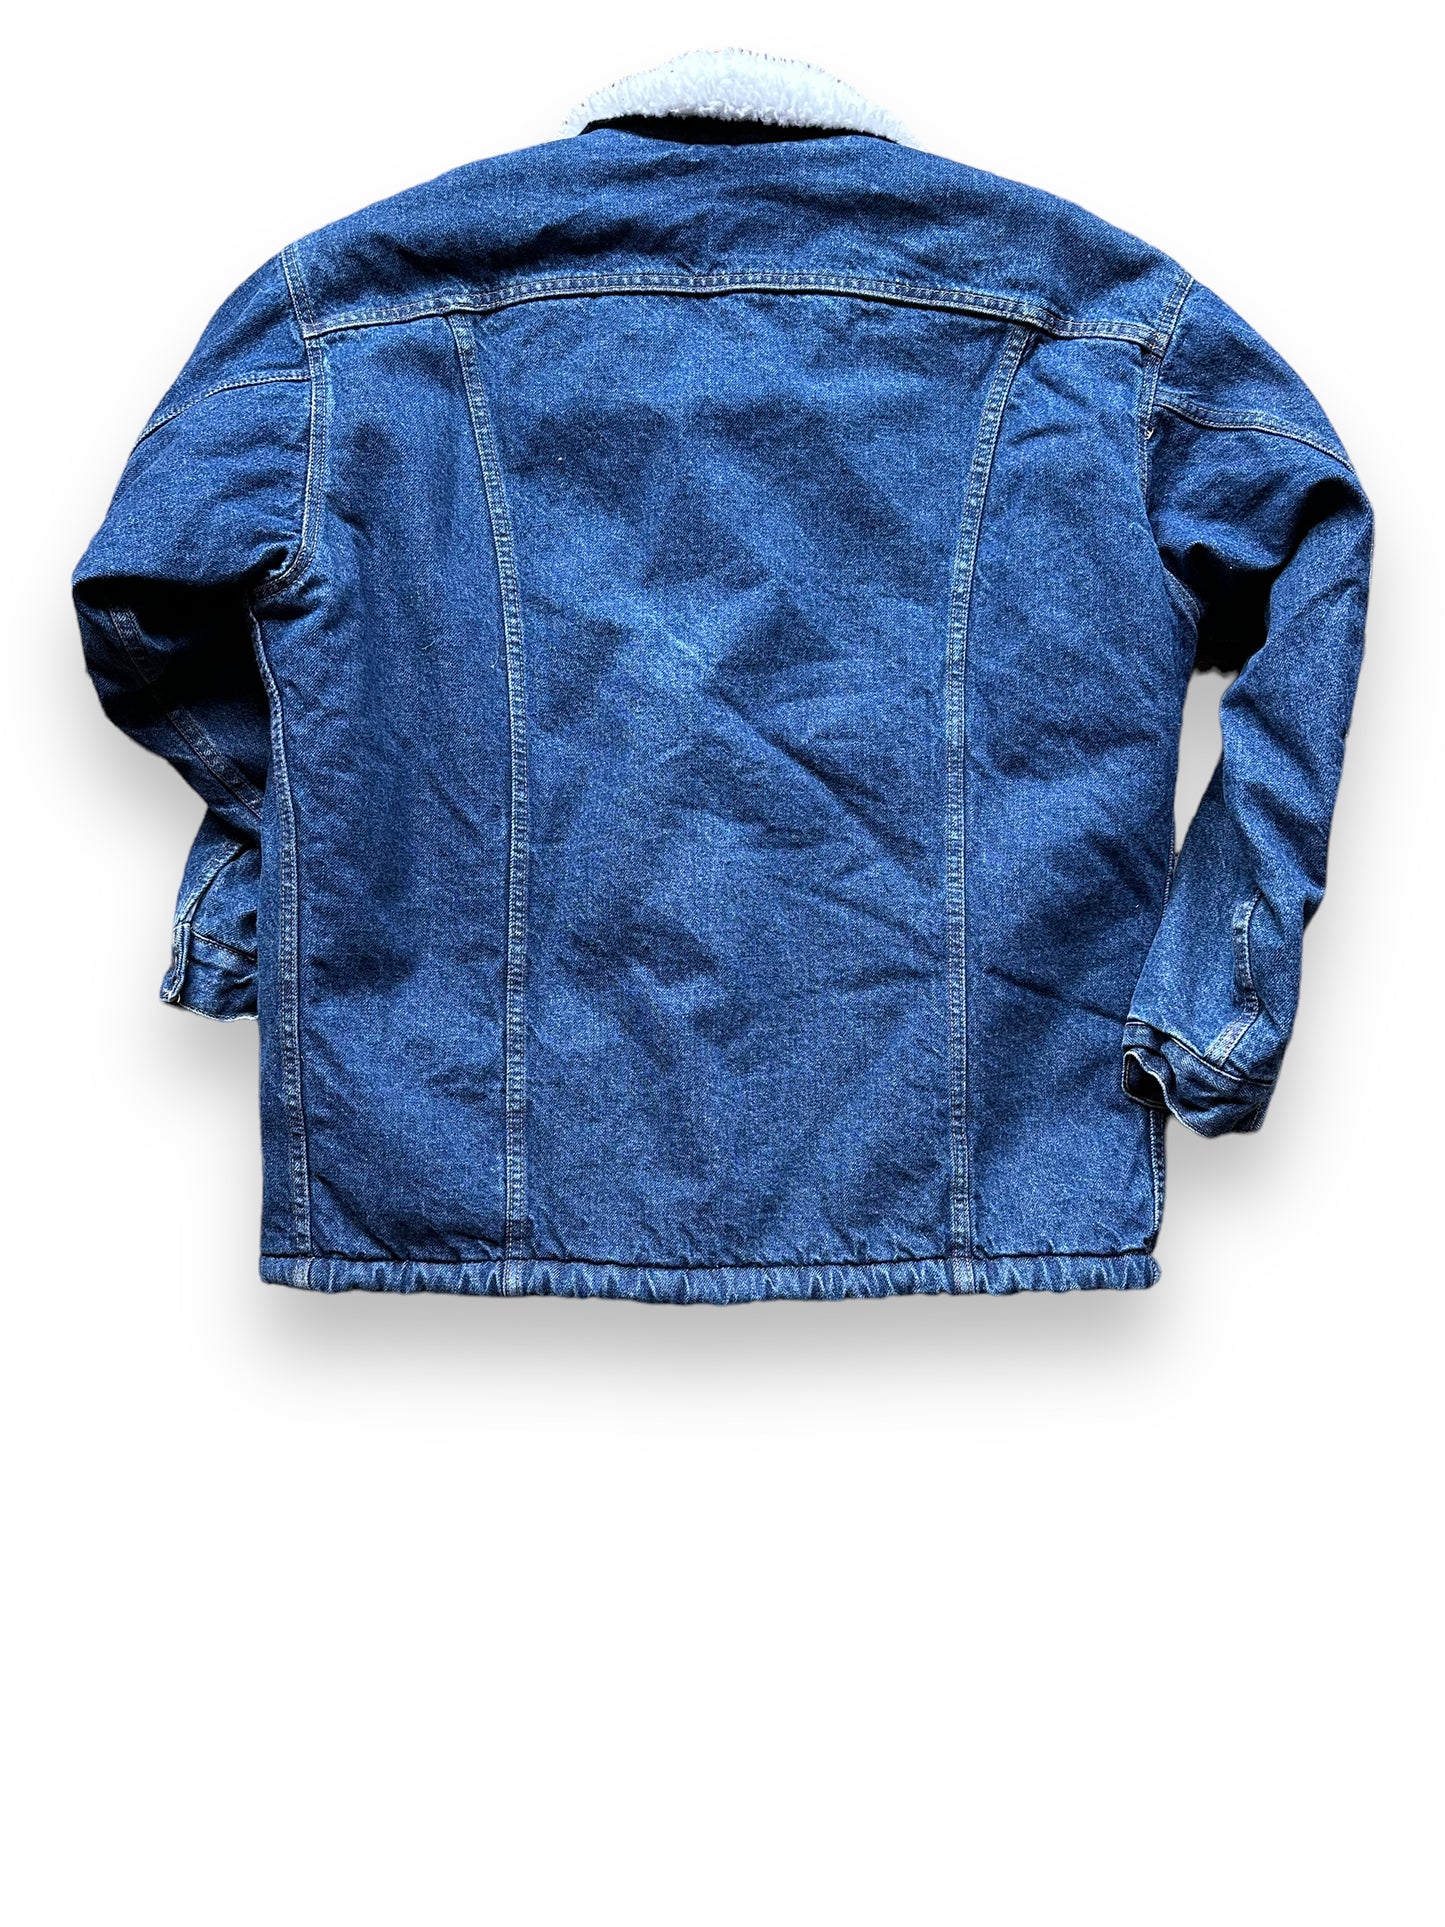 Rear View of Vintage Dark Levis Sherpa Type III Denim Jacket SZ L | Vintage Denim Workwear Seattle | Barn Owl Seattle